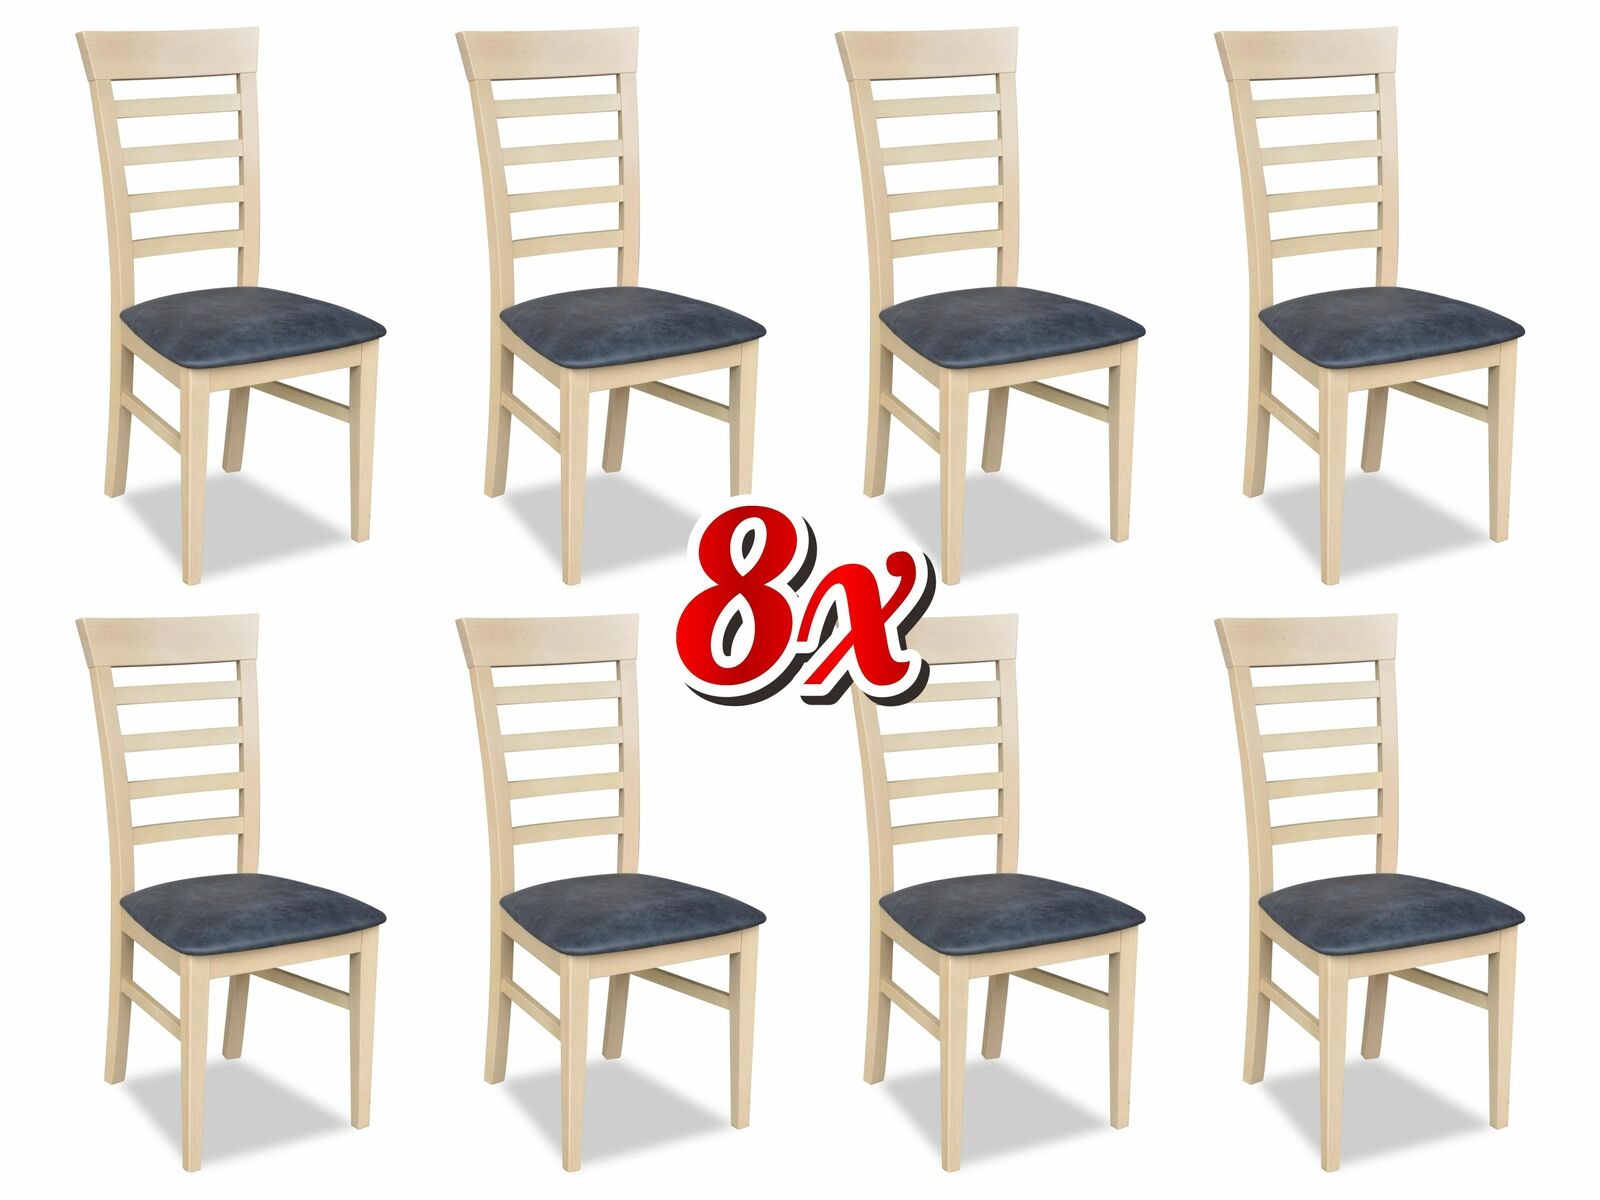 Garnitur Stühle Gastro Esszimmer Gruppe Set 8x Sessel Stuhl Design Holz Leder